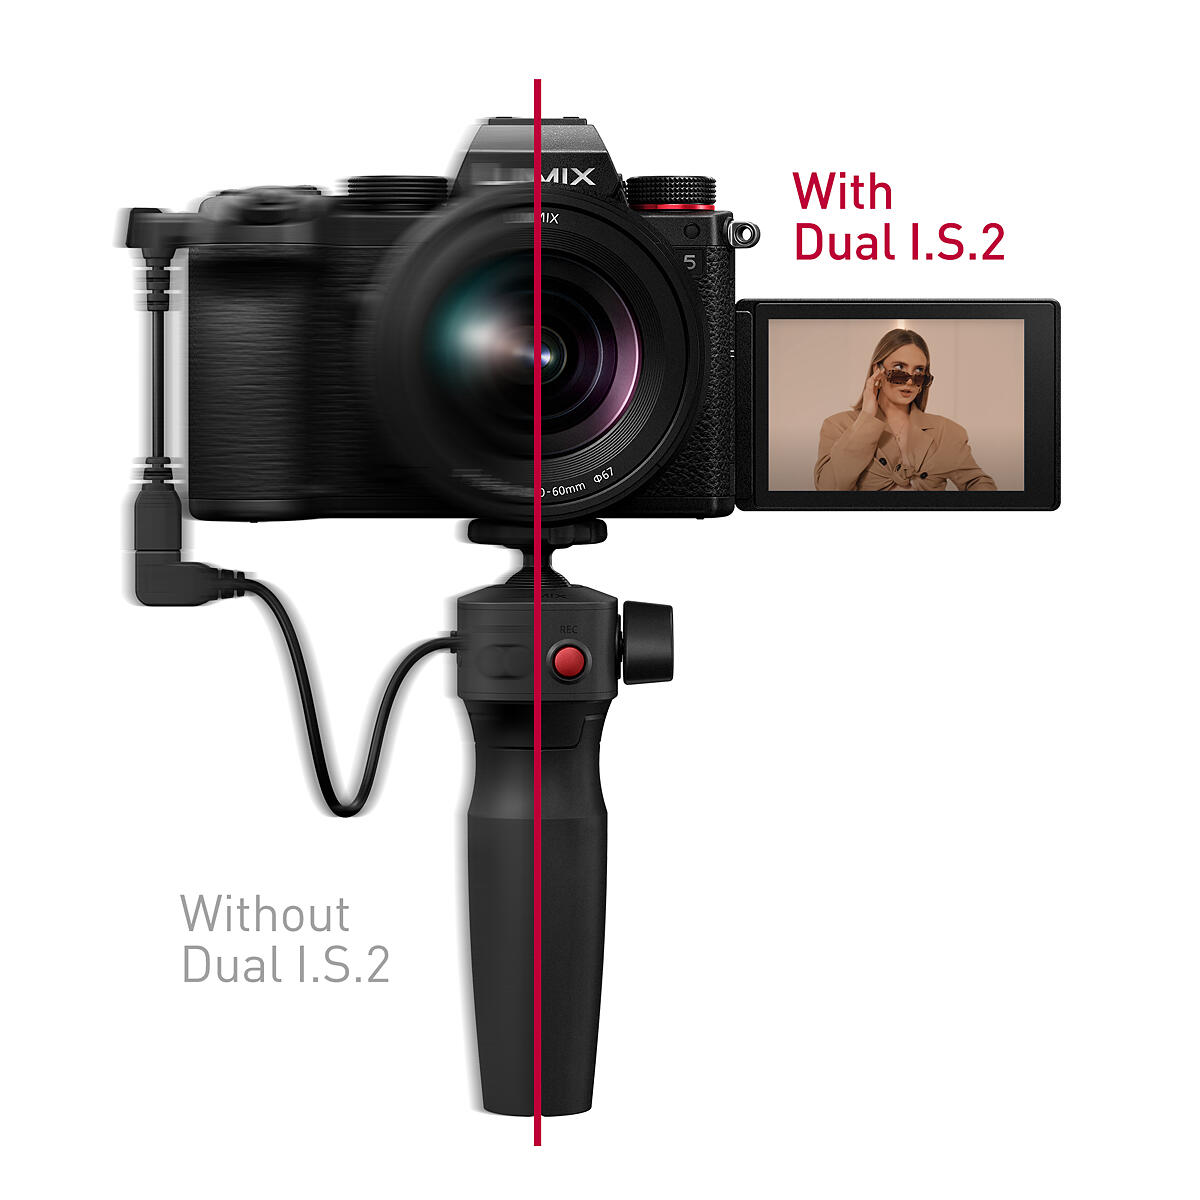 Dual Image Stabilisation